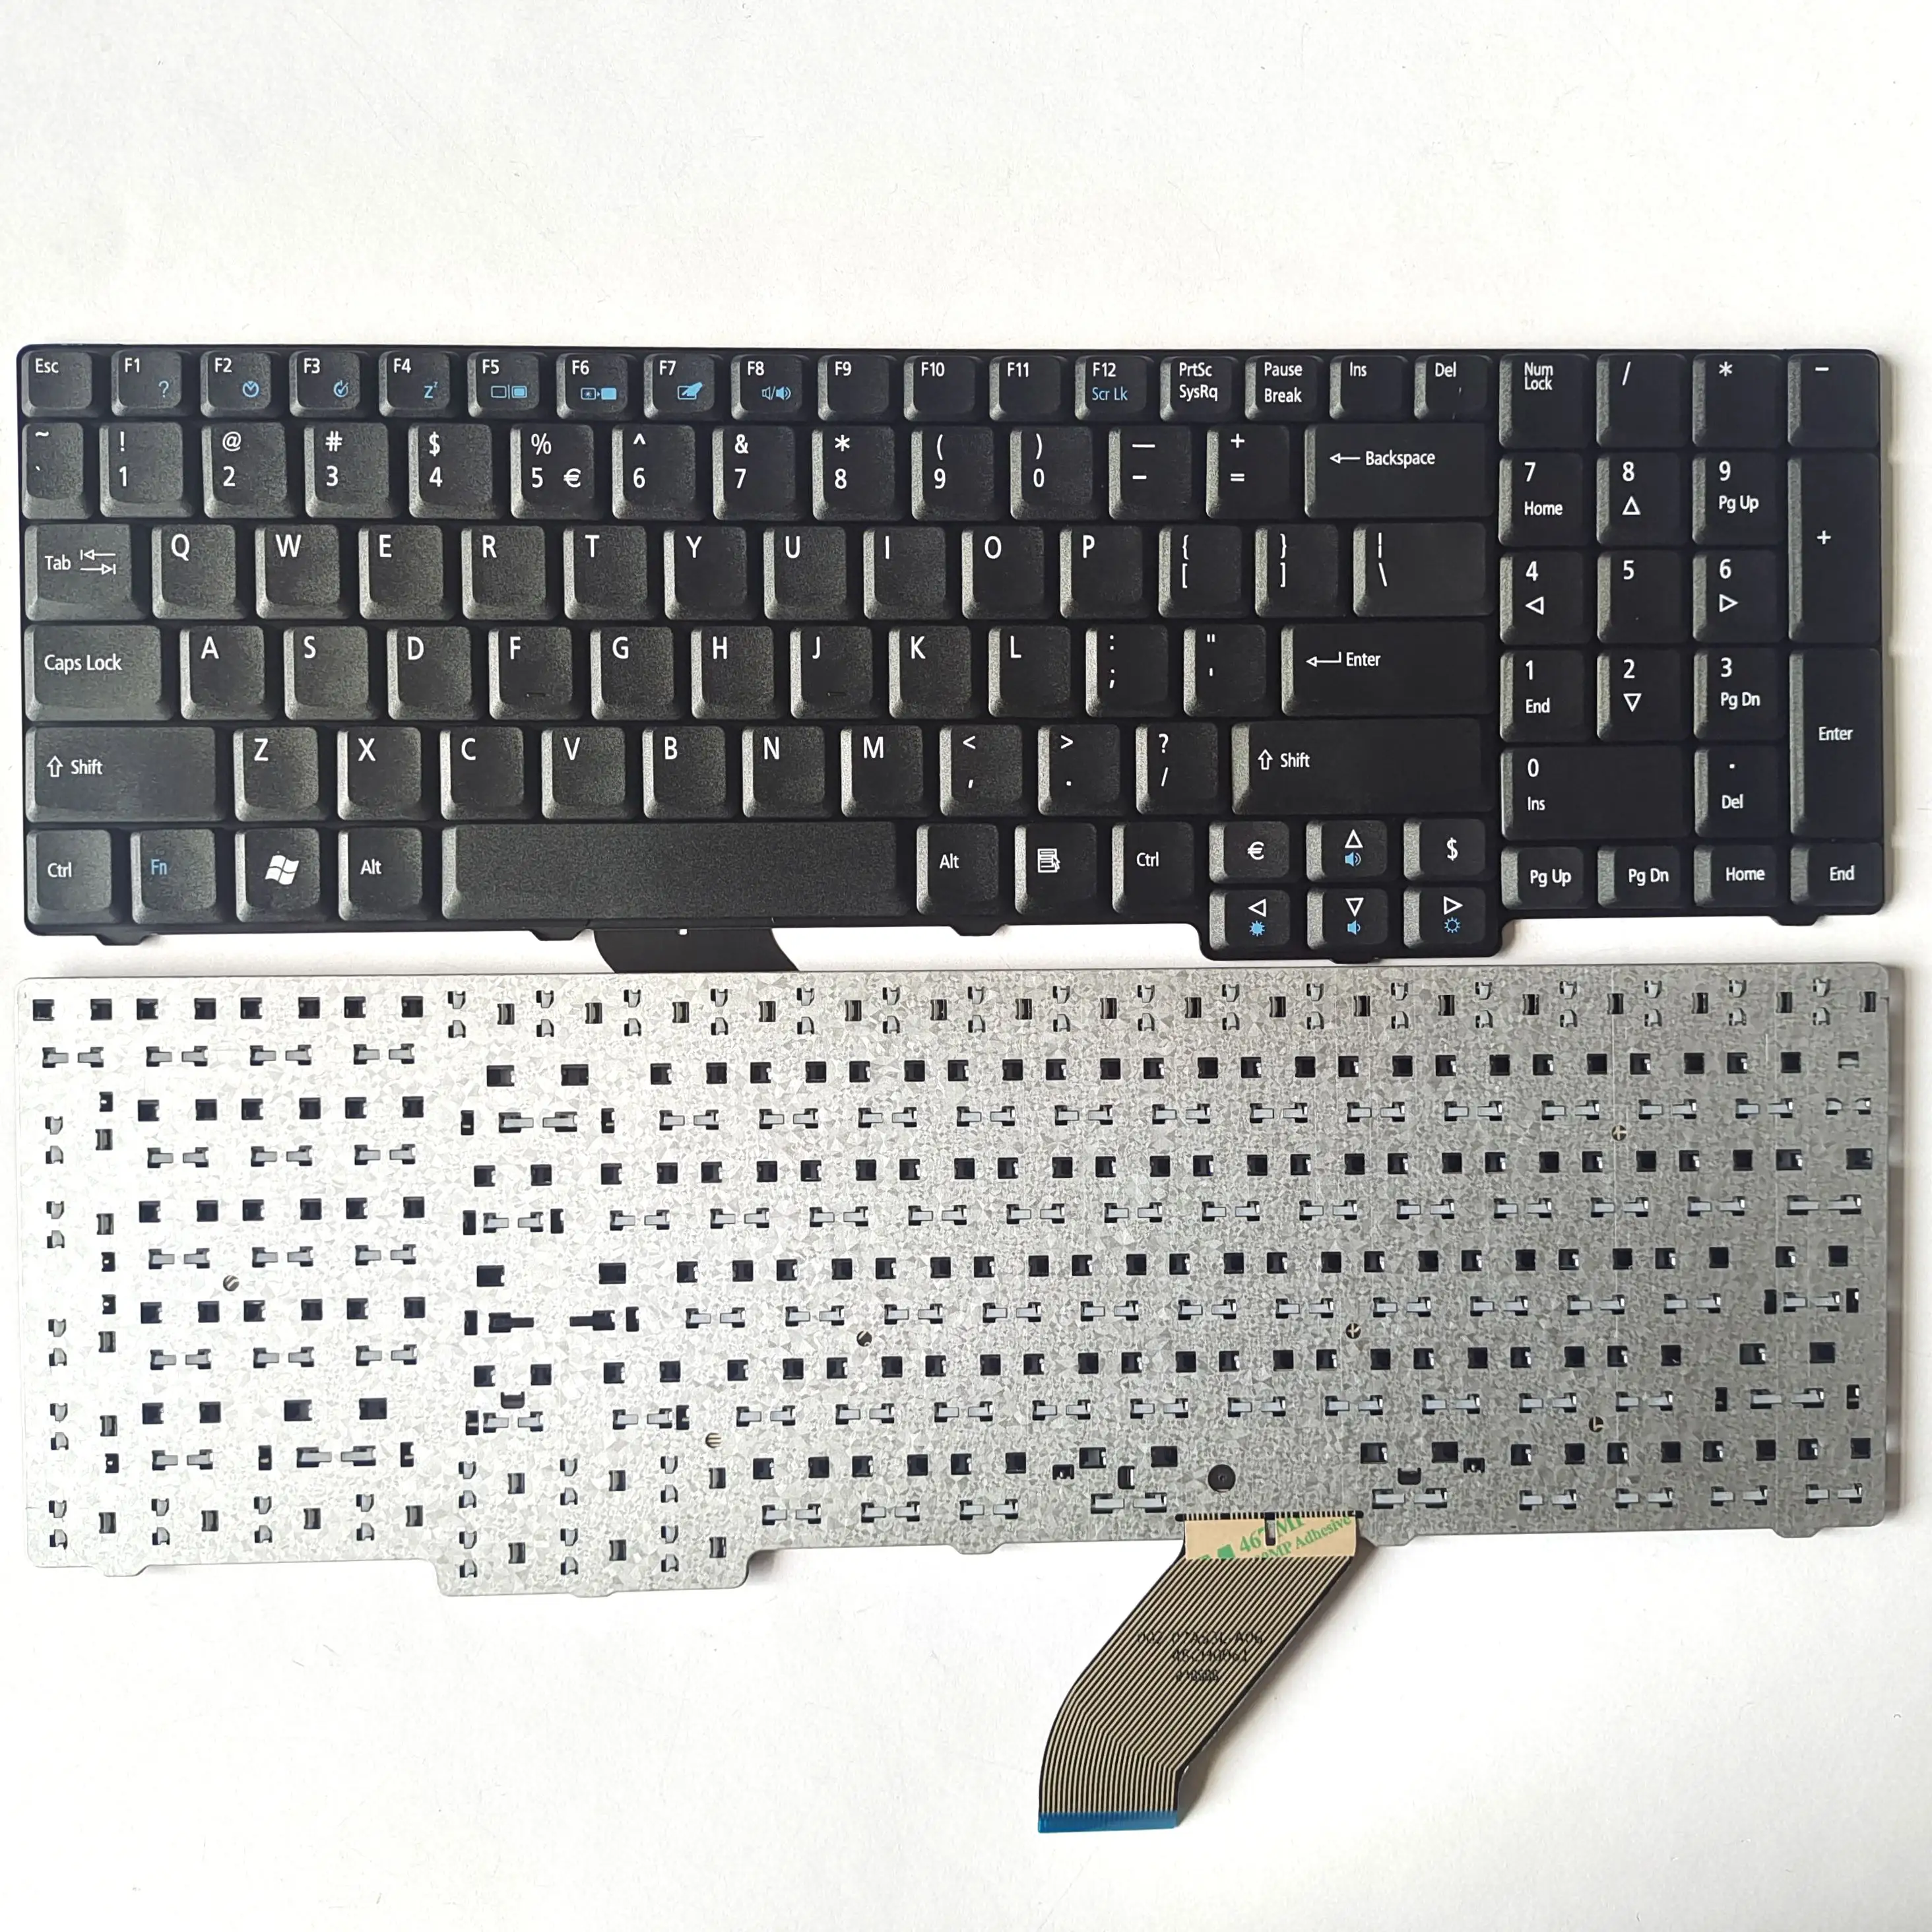 Оригинальная сменная Клавиатура для ноутбука, запасные части, клавиатура для ноутбука, для Acer, США, 9400, 5235, 5335, 5535 серии